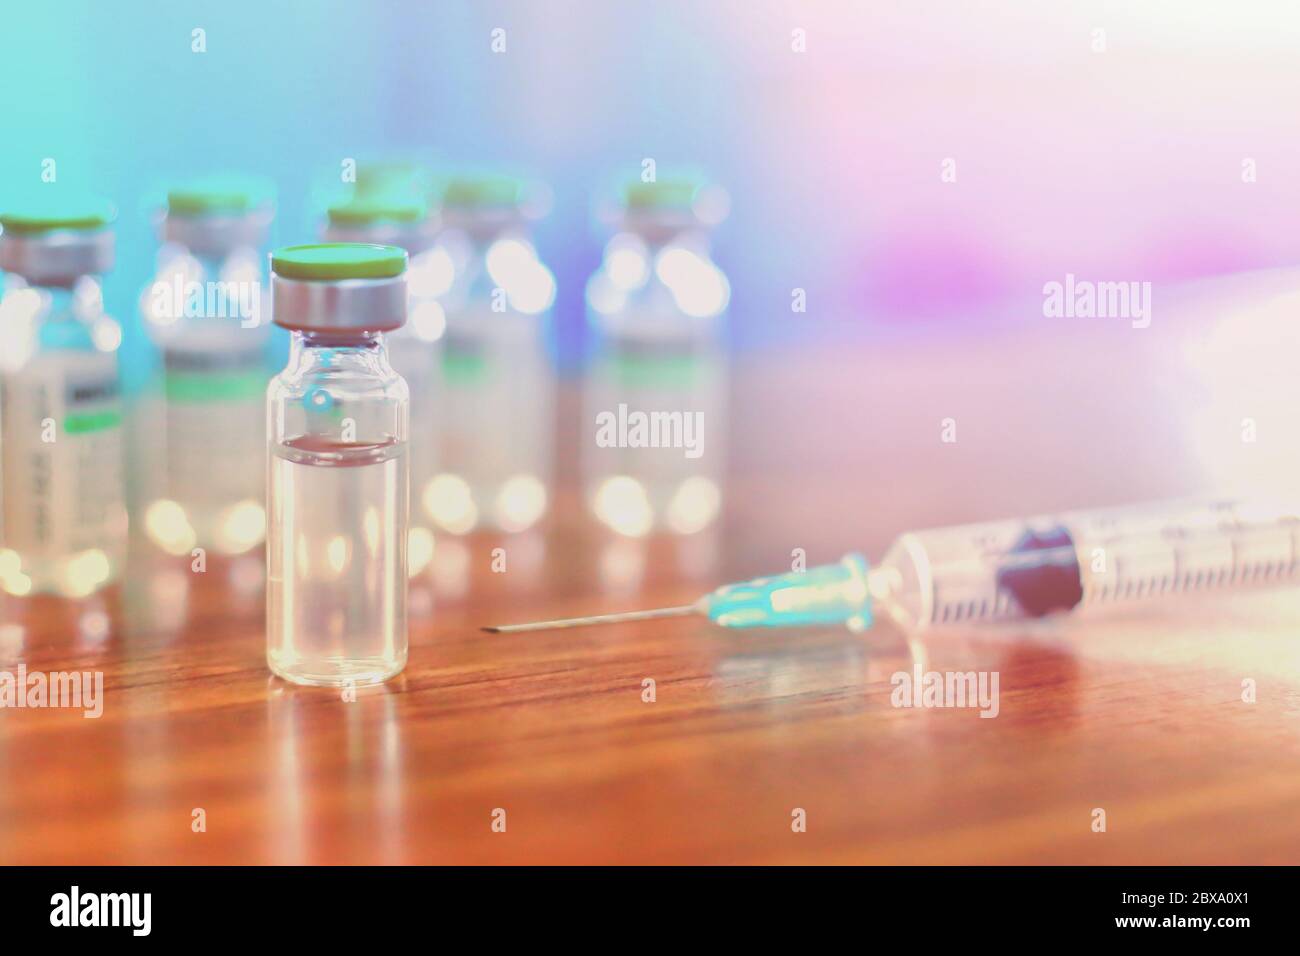 Testimpfstoff Coronavirus Deferlopment Fläschchen Dosis Grippeschutznadel Spritze, medizinisches Konzept Impfung hypodermische Injektion Behandlung Krankheit Pflege Stockfoto